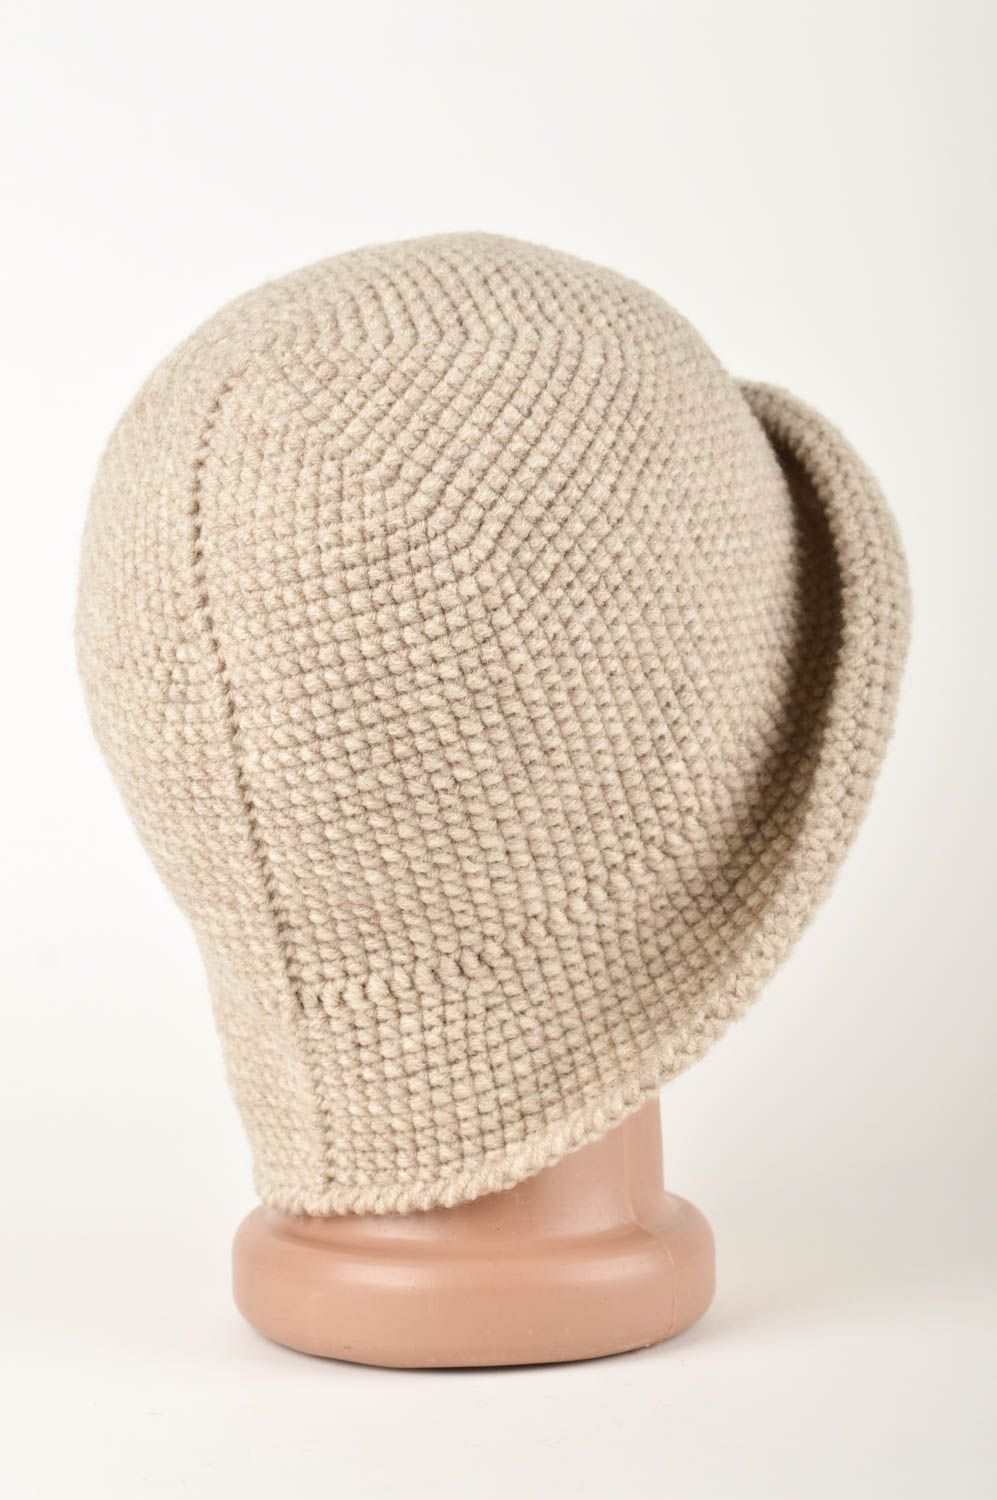 Handmade kopfbedeckung Damen Mütze aus Wolle modisches Accessoire beige schön foto 5